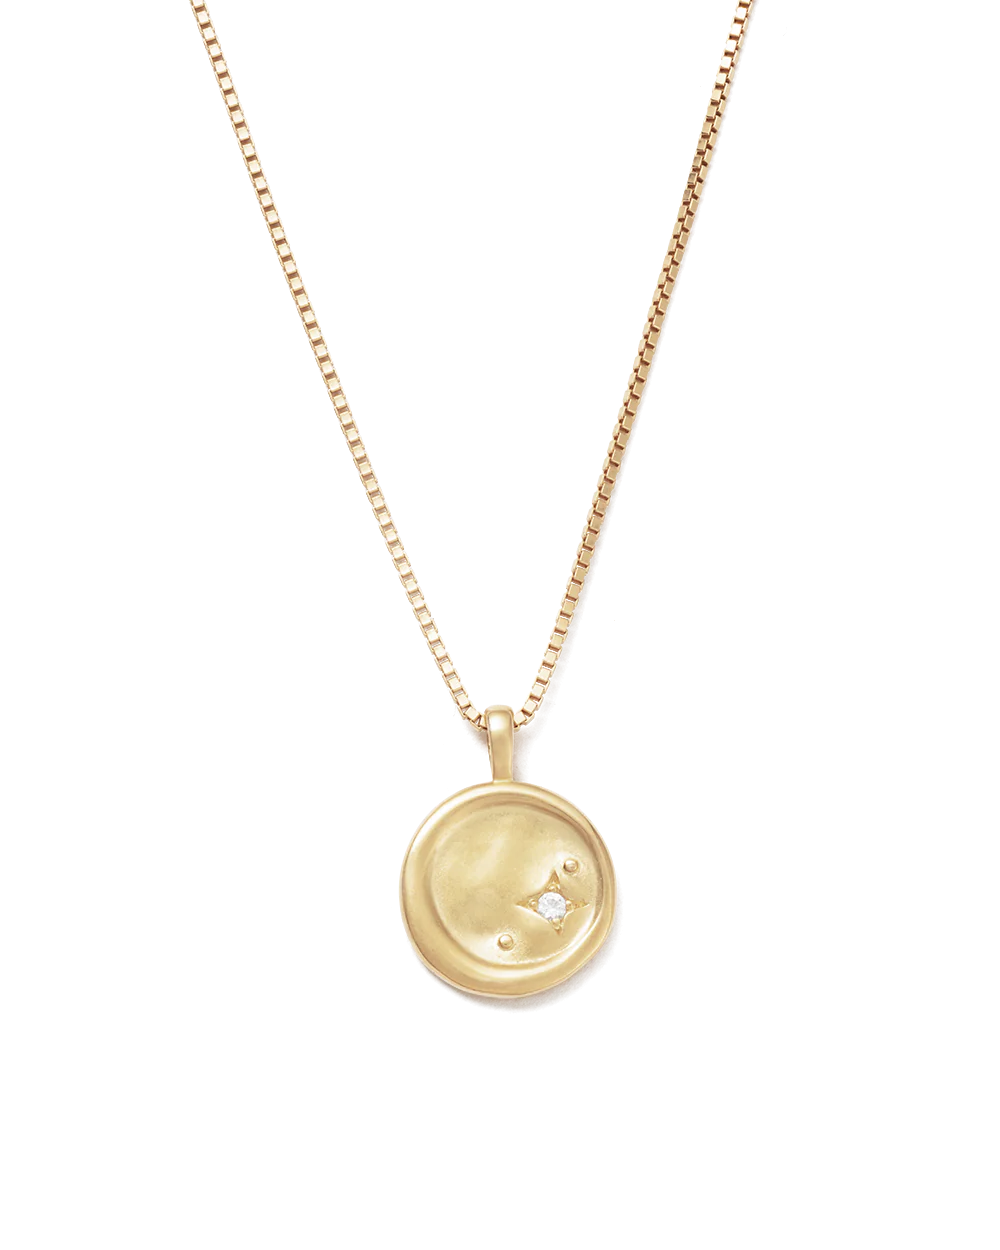 Moonrise Necklace 18K GOLD VERMEIL